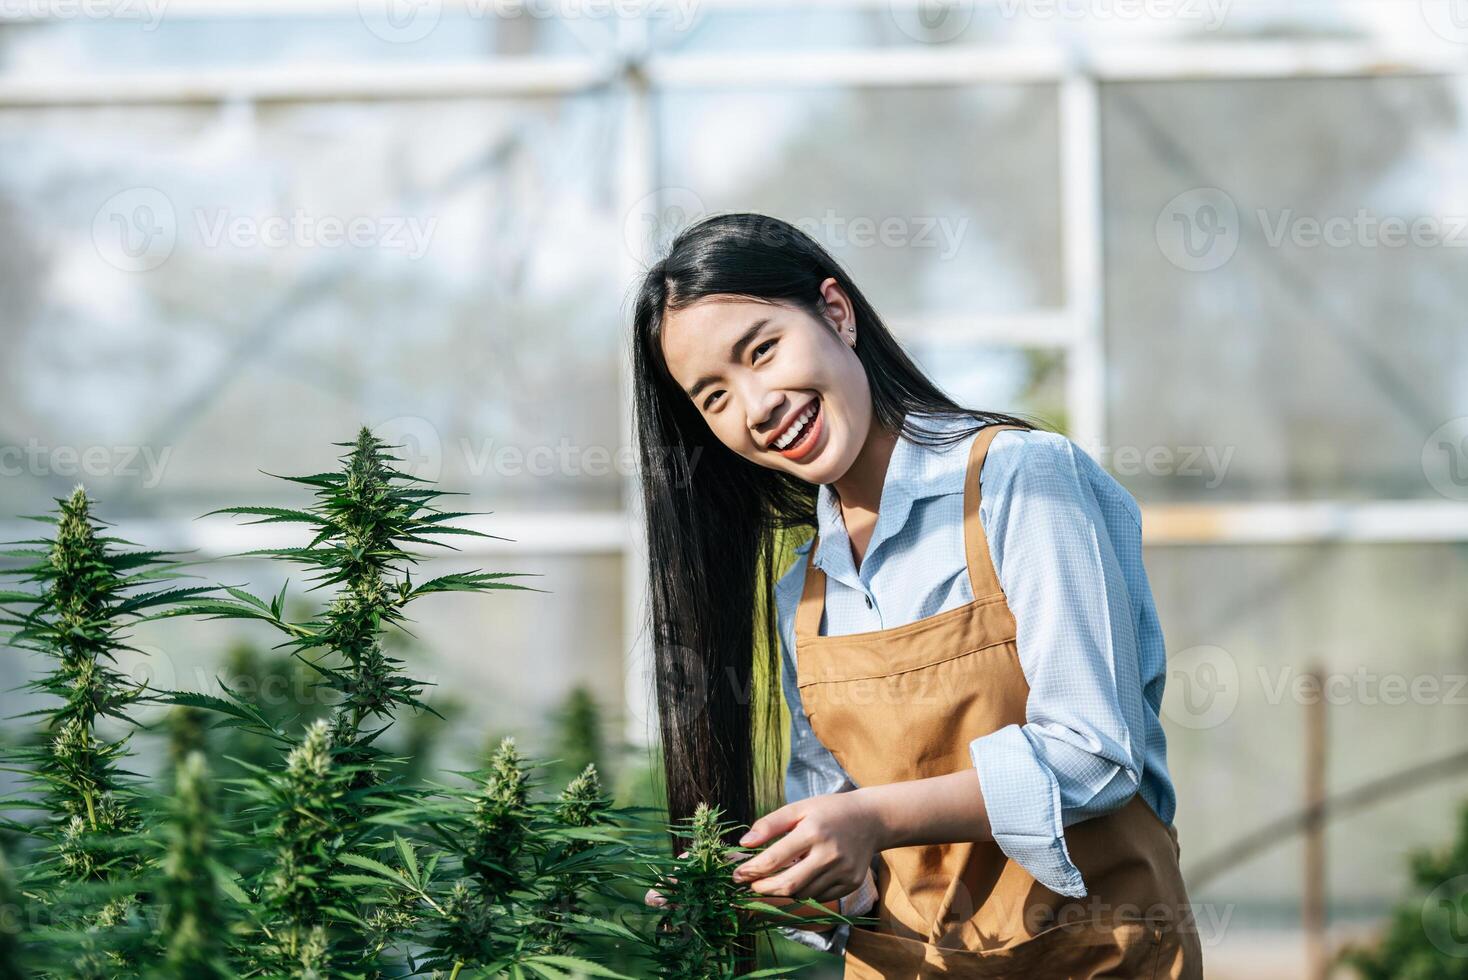 retrato de una mujer asiática investigadora de marihuana revisando la plantación de marihuana en una granja de cannabis, cannabis agrícola comercial. concepto de negocio de cannabis y medicina alternativa. foto